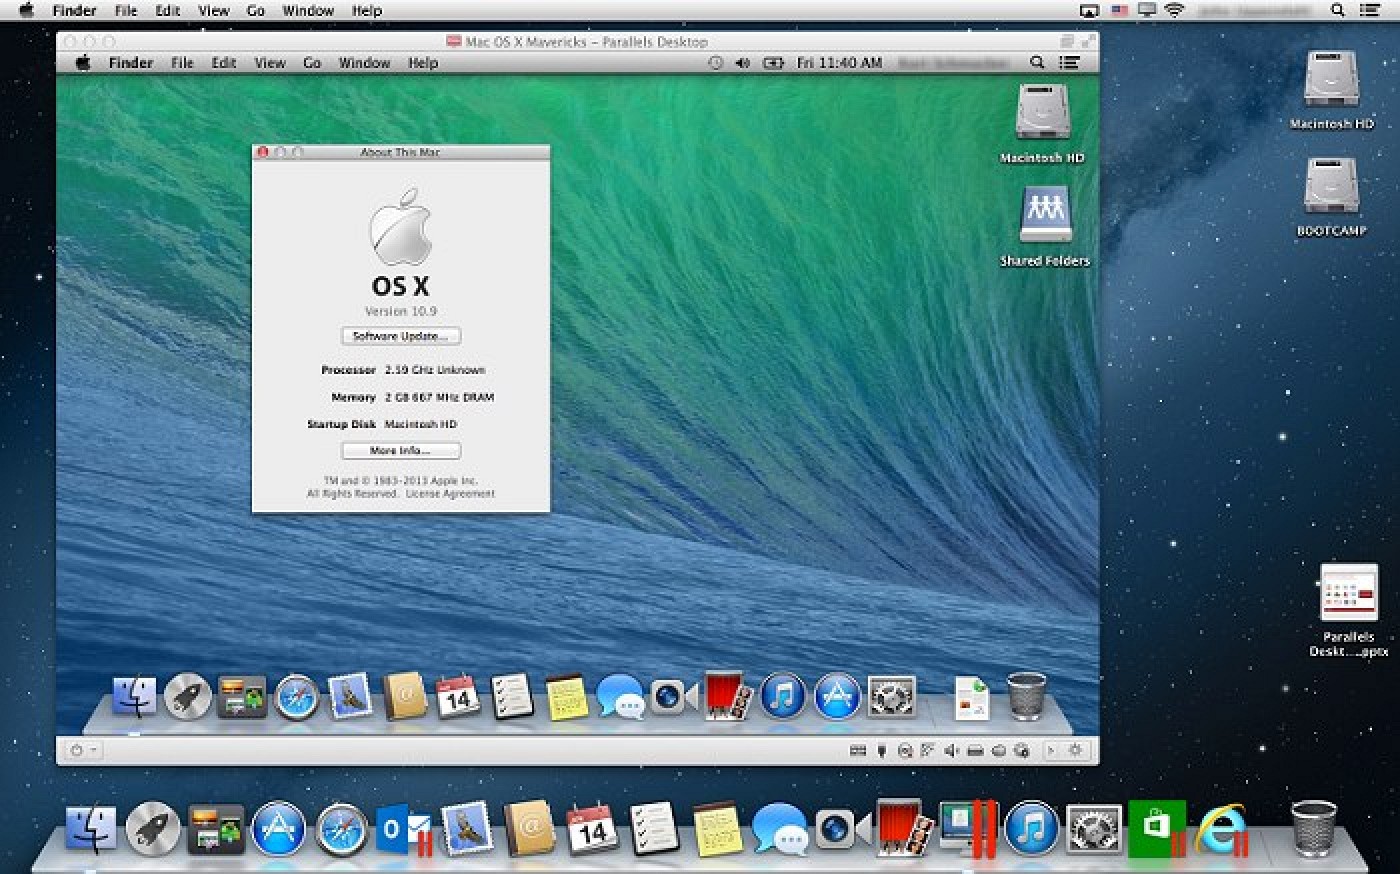 Devolo software mac os x lion 10 7 5 11g63 11g63 upgrade to 10 8